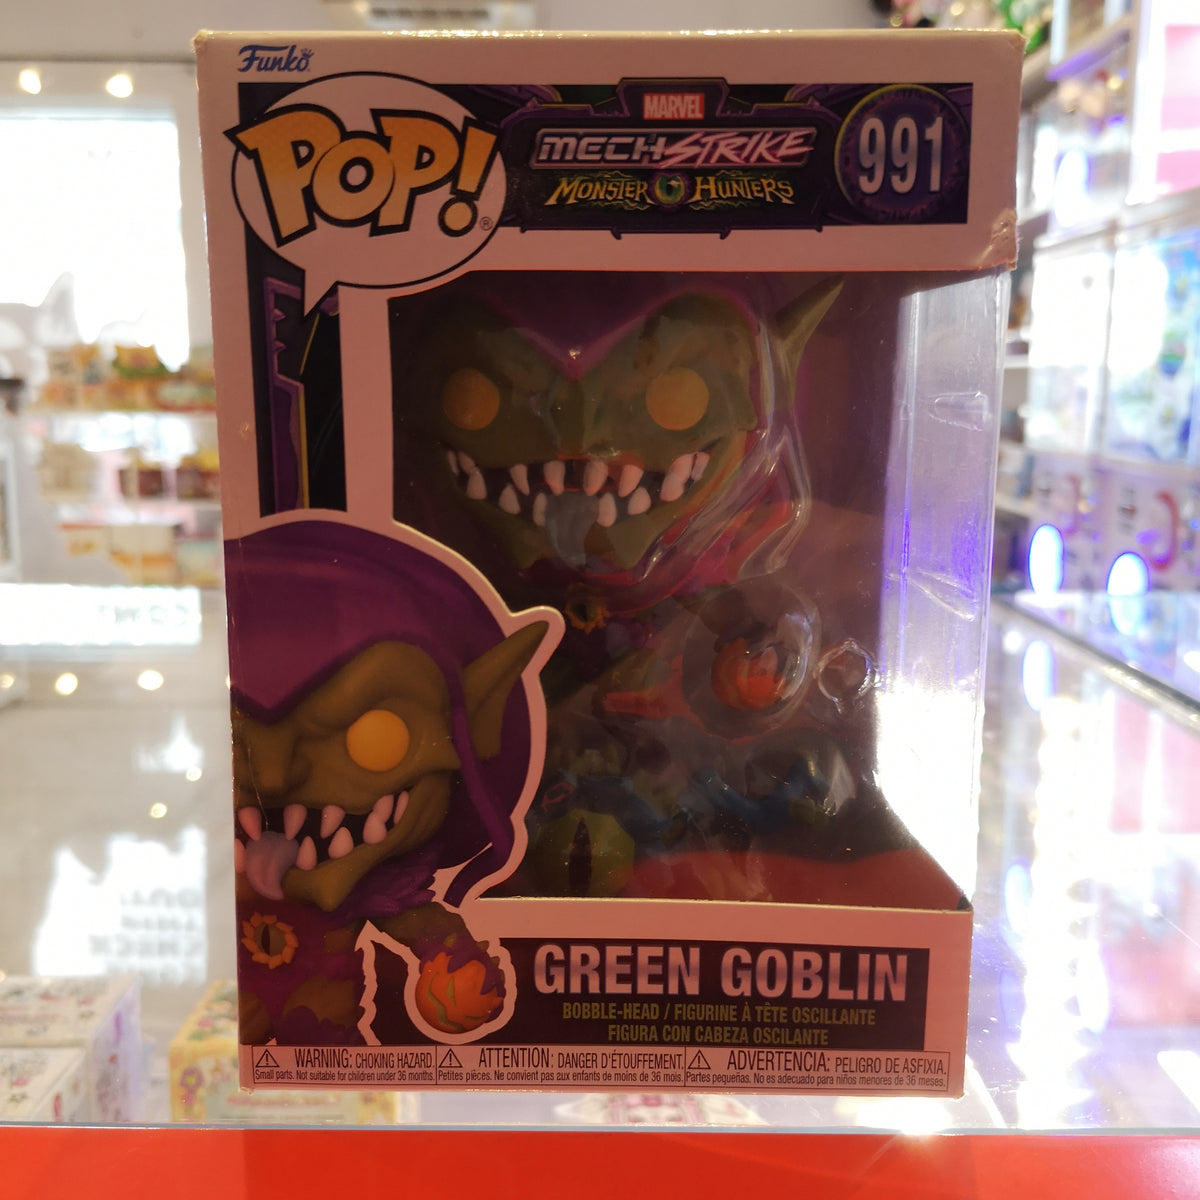 Green Goblin - MechStrike Monster Hunters Funko POP! by Funko